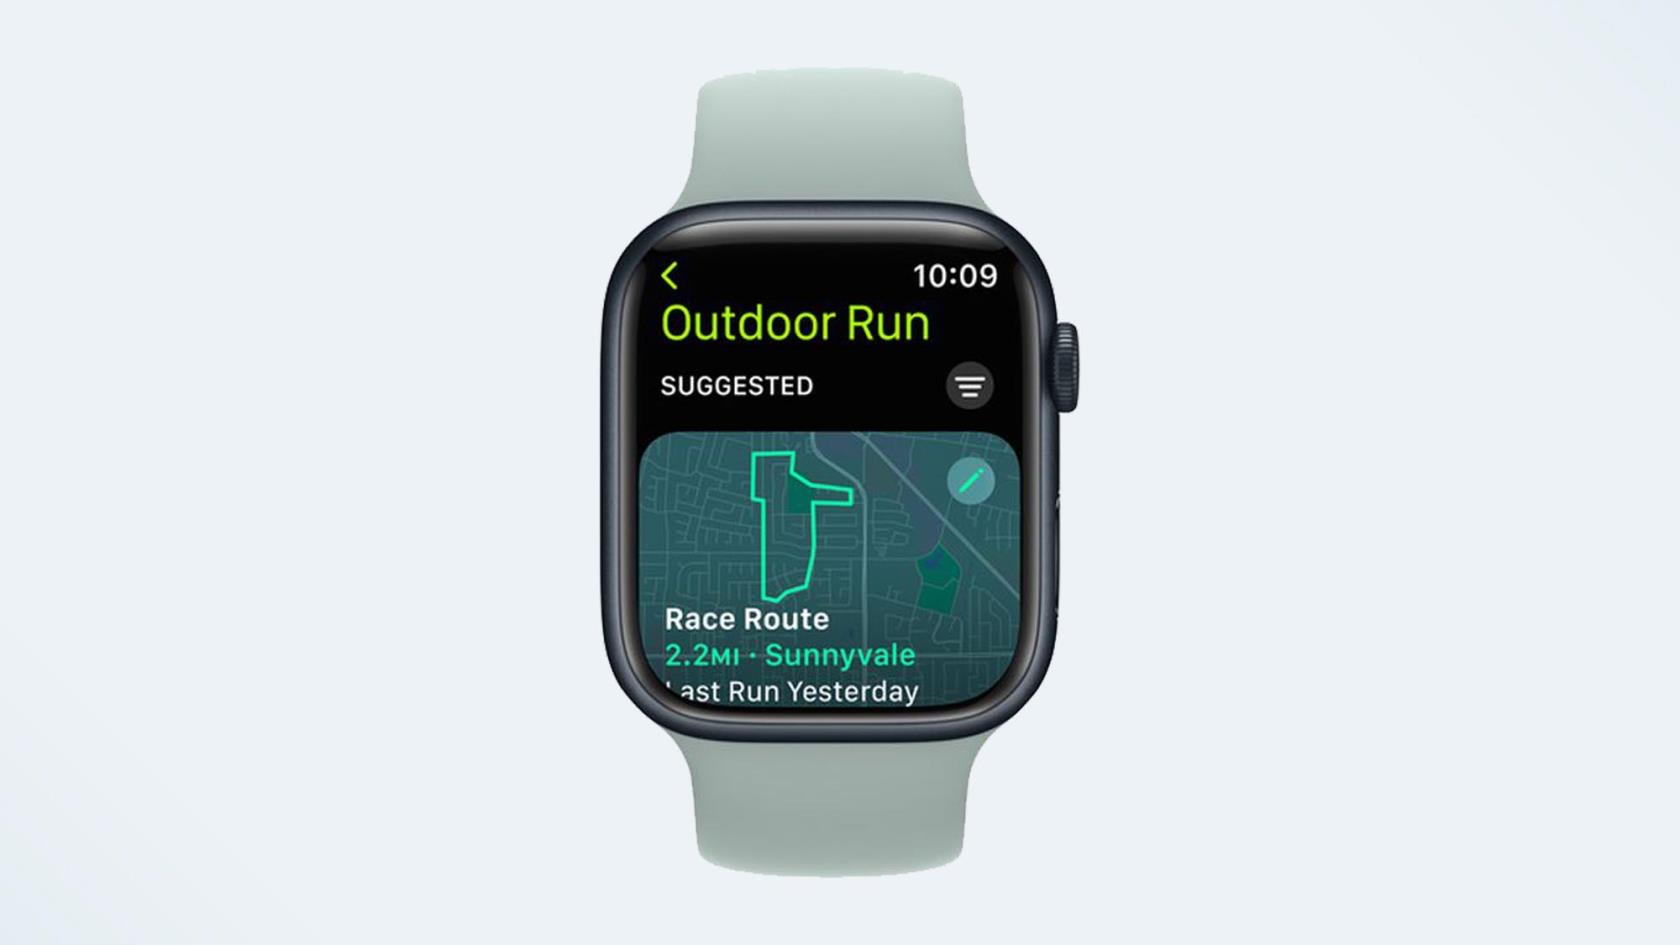 J'ai utilisé cette nouvelle fonctionnalité de fitness Apple Watch pour gamifier ma course hebdomadaire